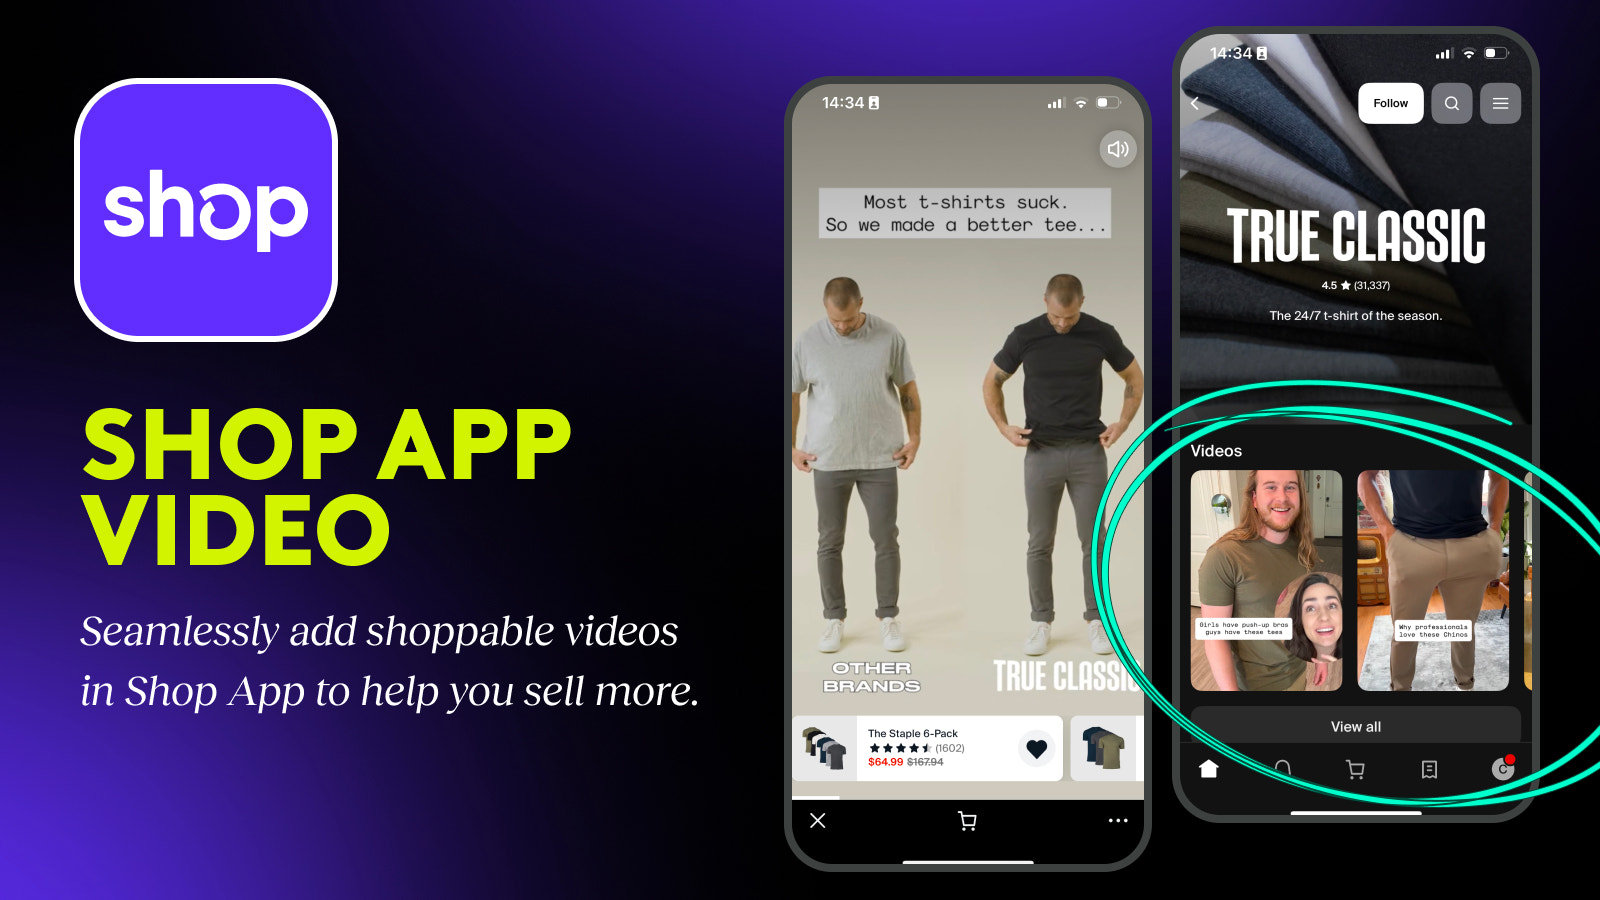 Shop app video, Shop minis, Shoppable video, mobile app video